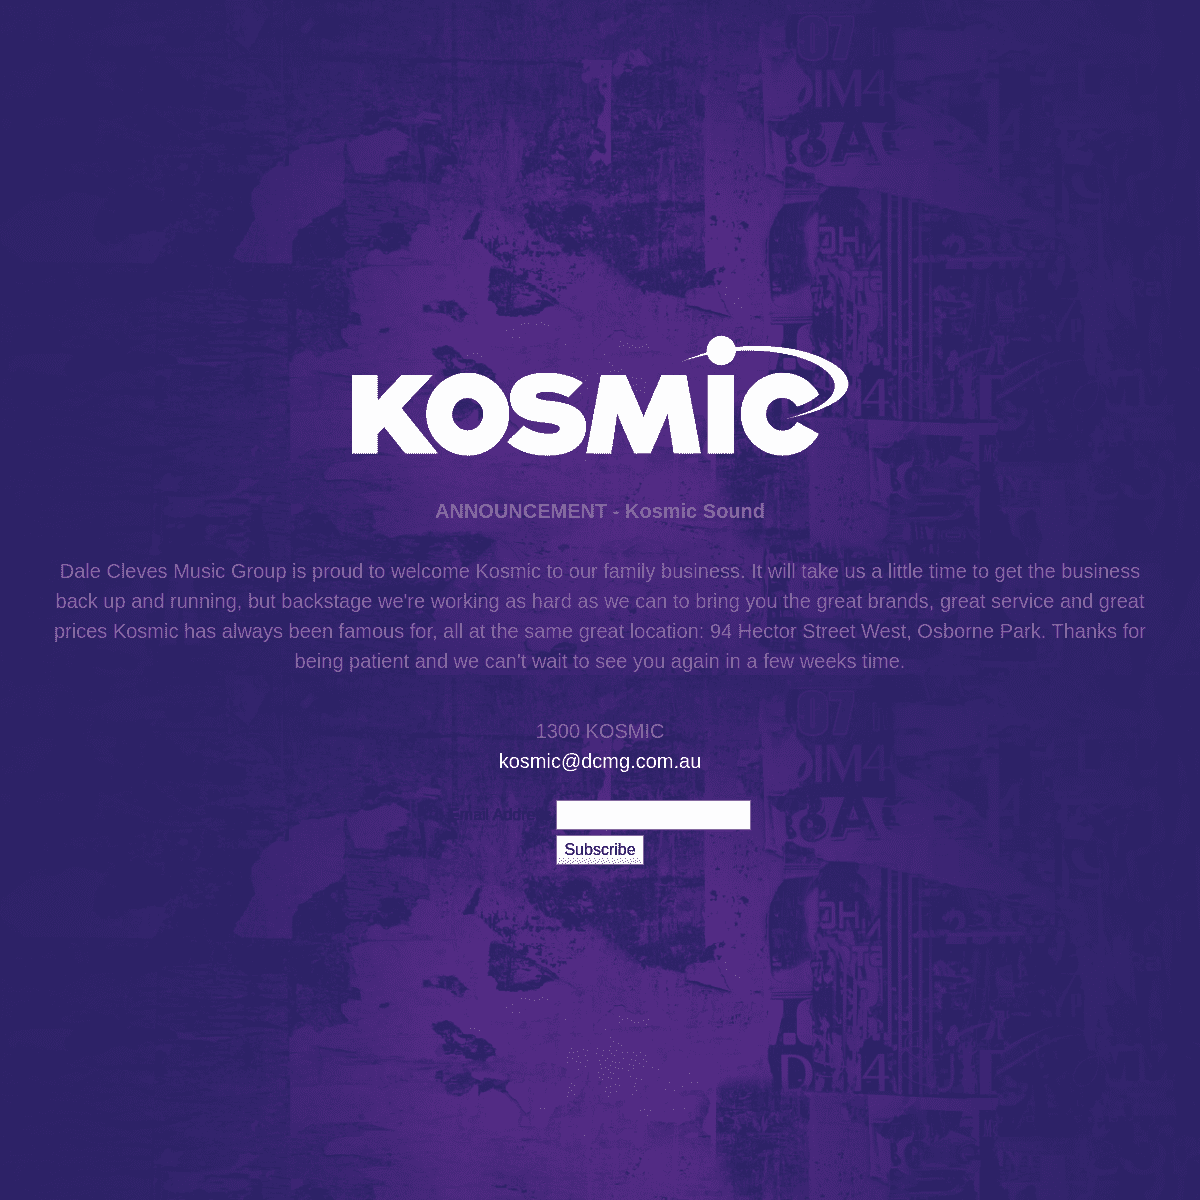 A complete backup of kosmic.com.au